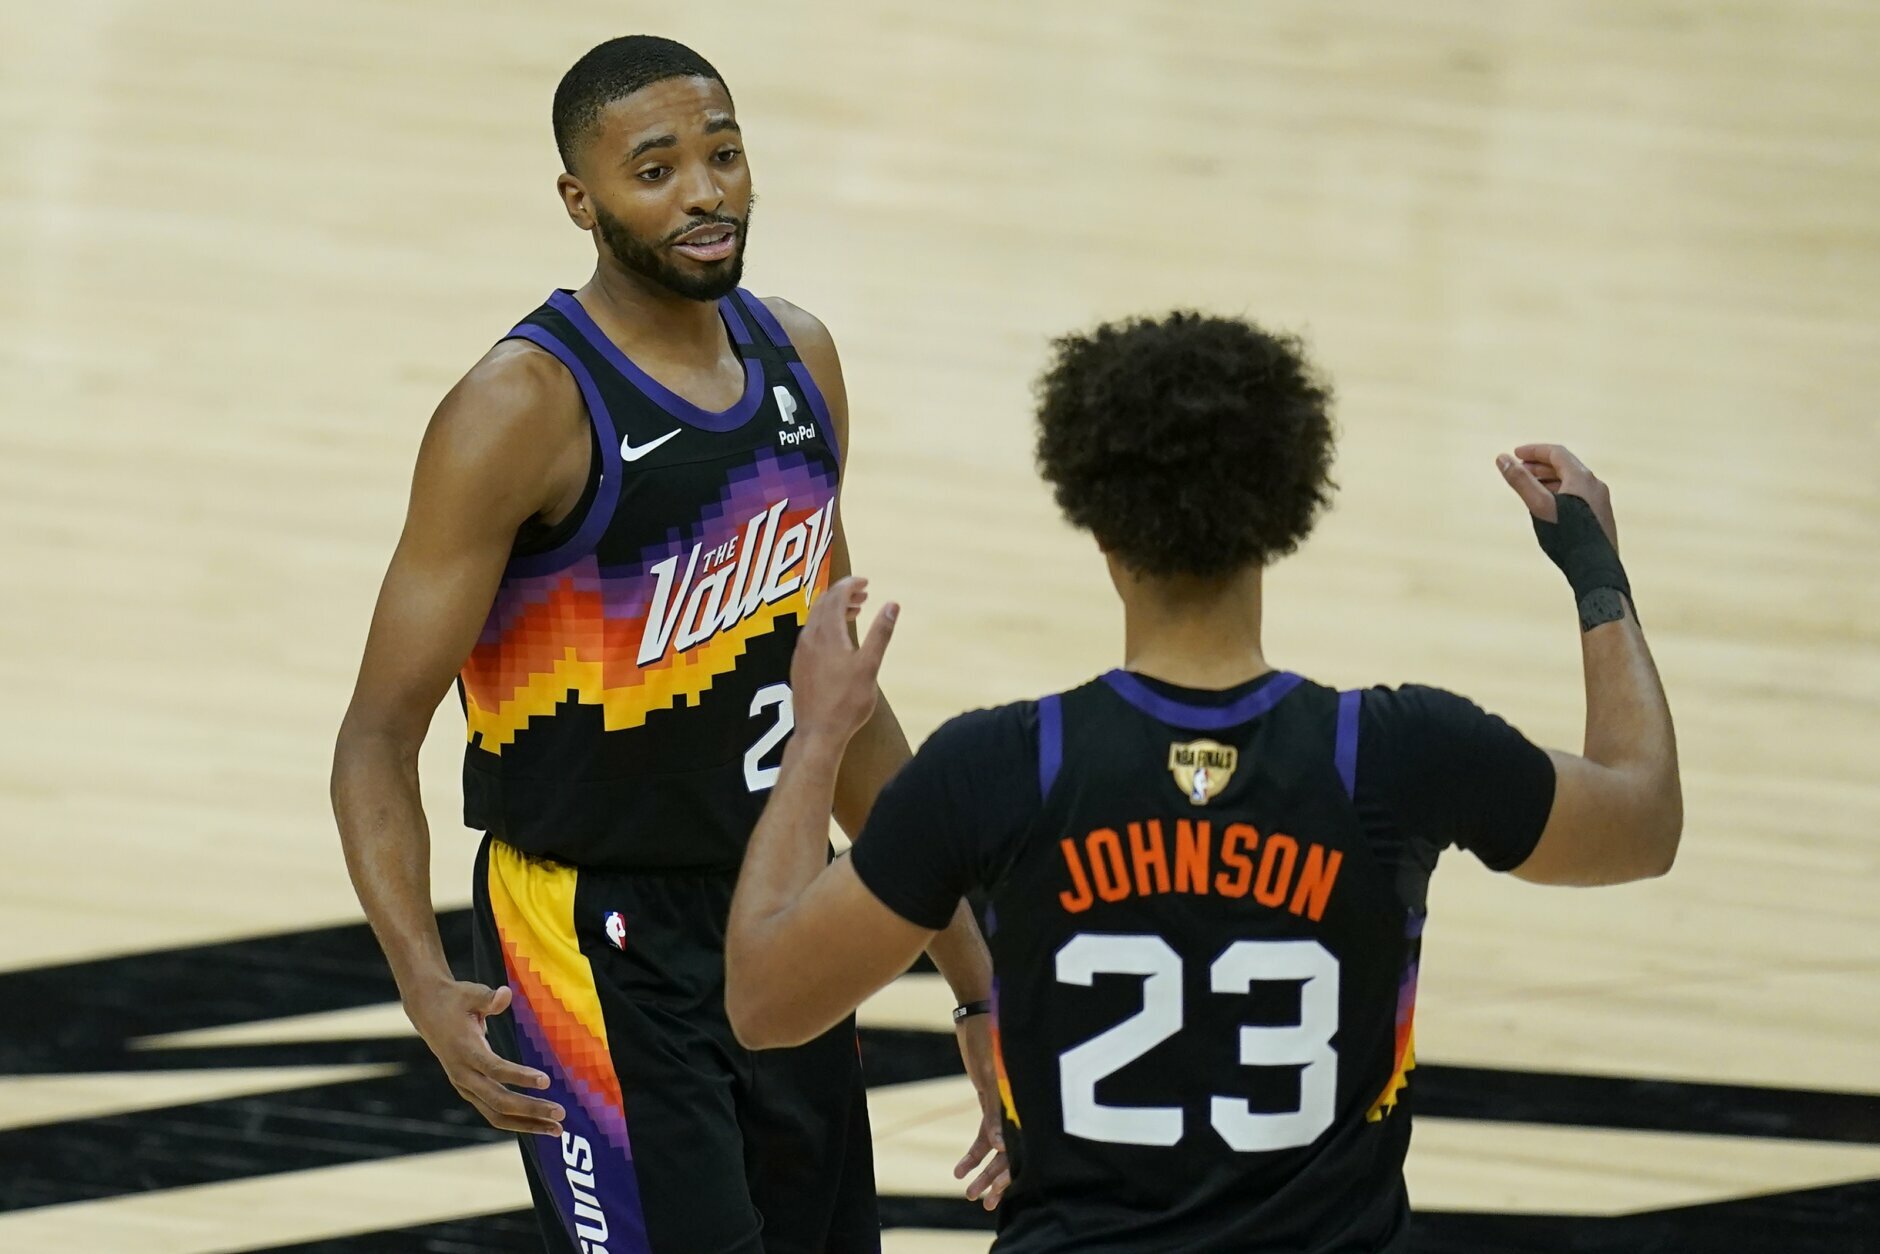 NBA - Mikal Bridges' 27 point performance led the Suns to